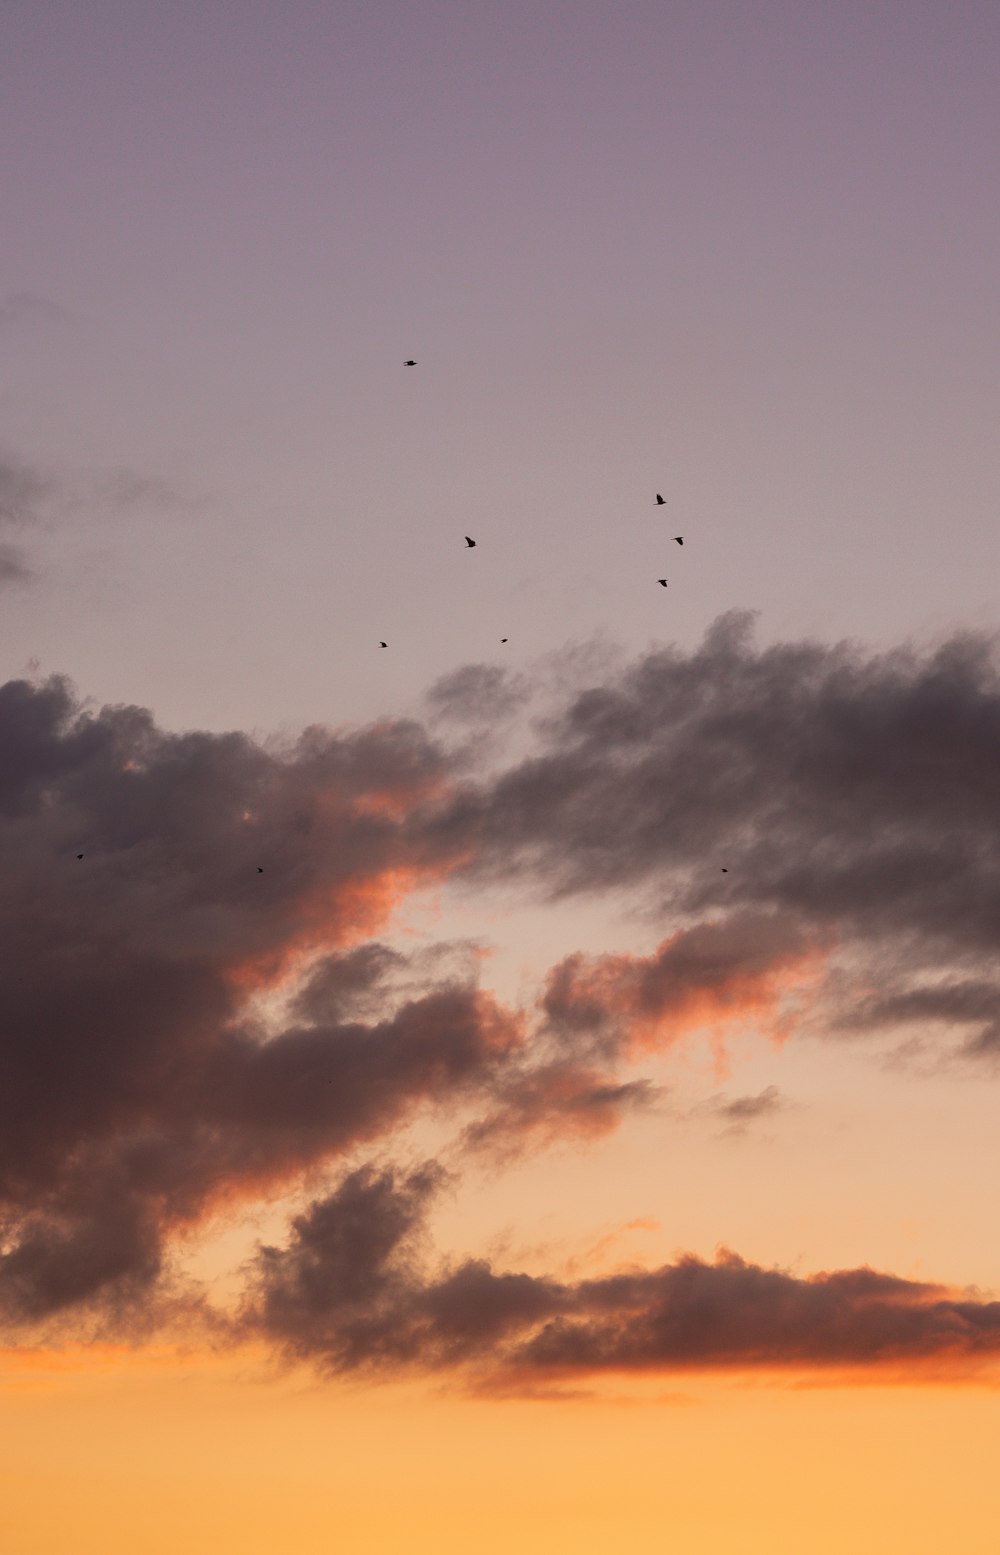 bando de pássaros voando sob o céu nublado durante o dia